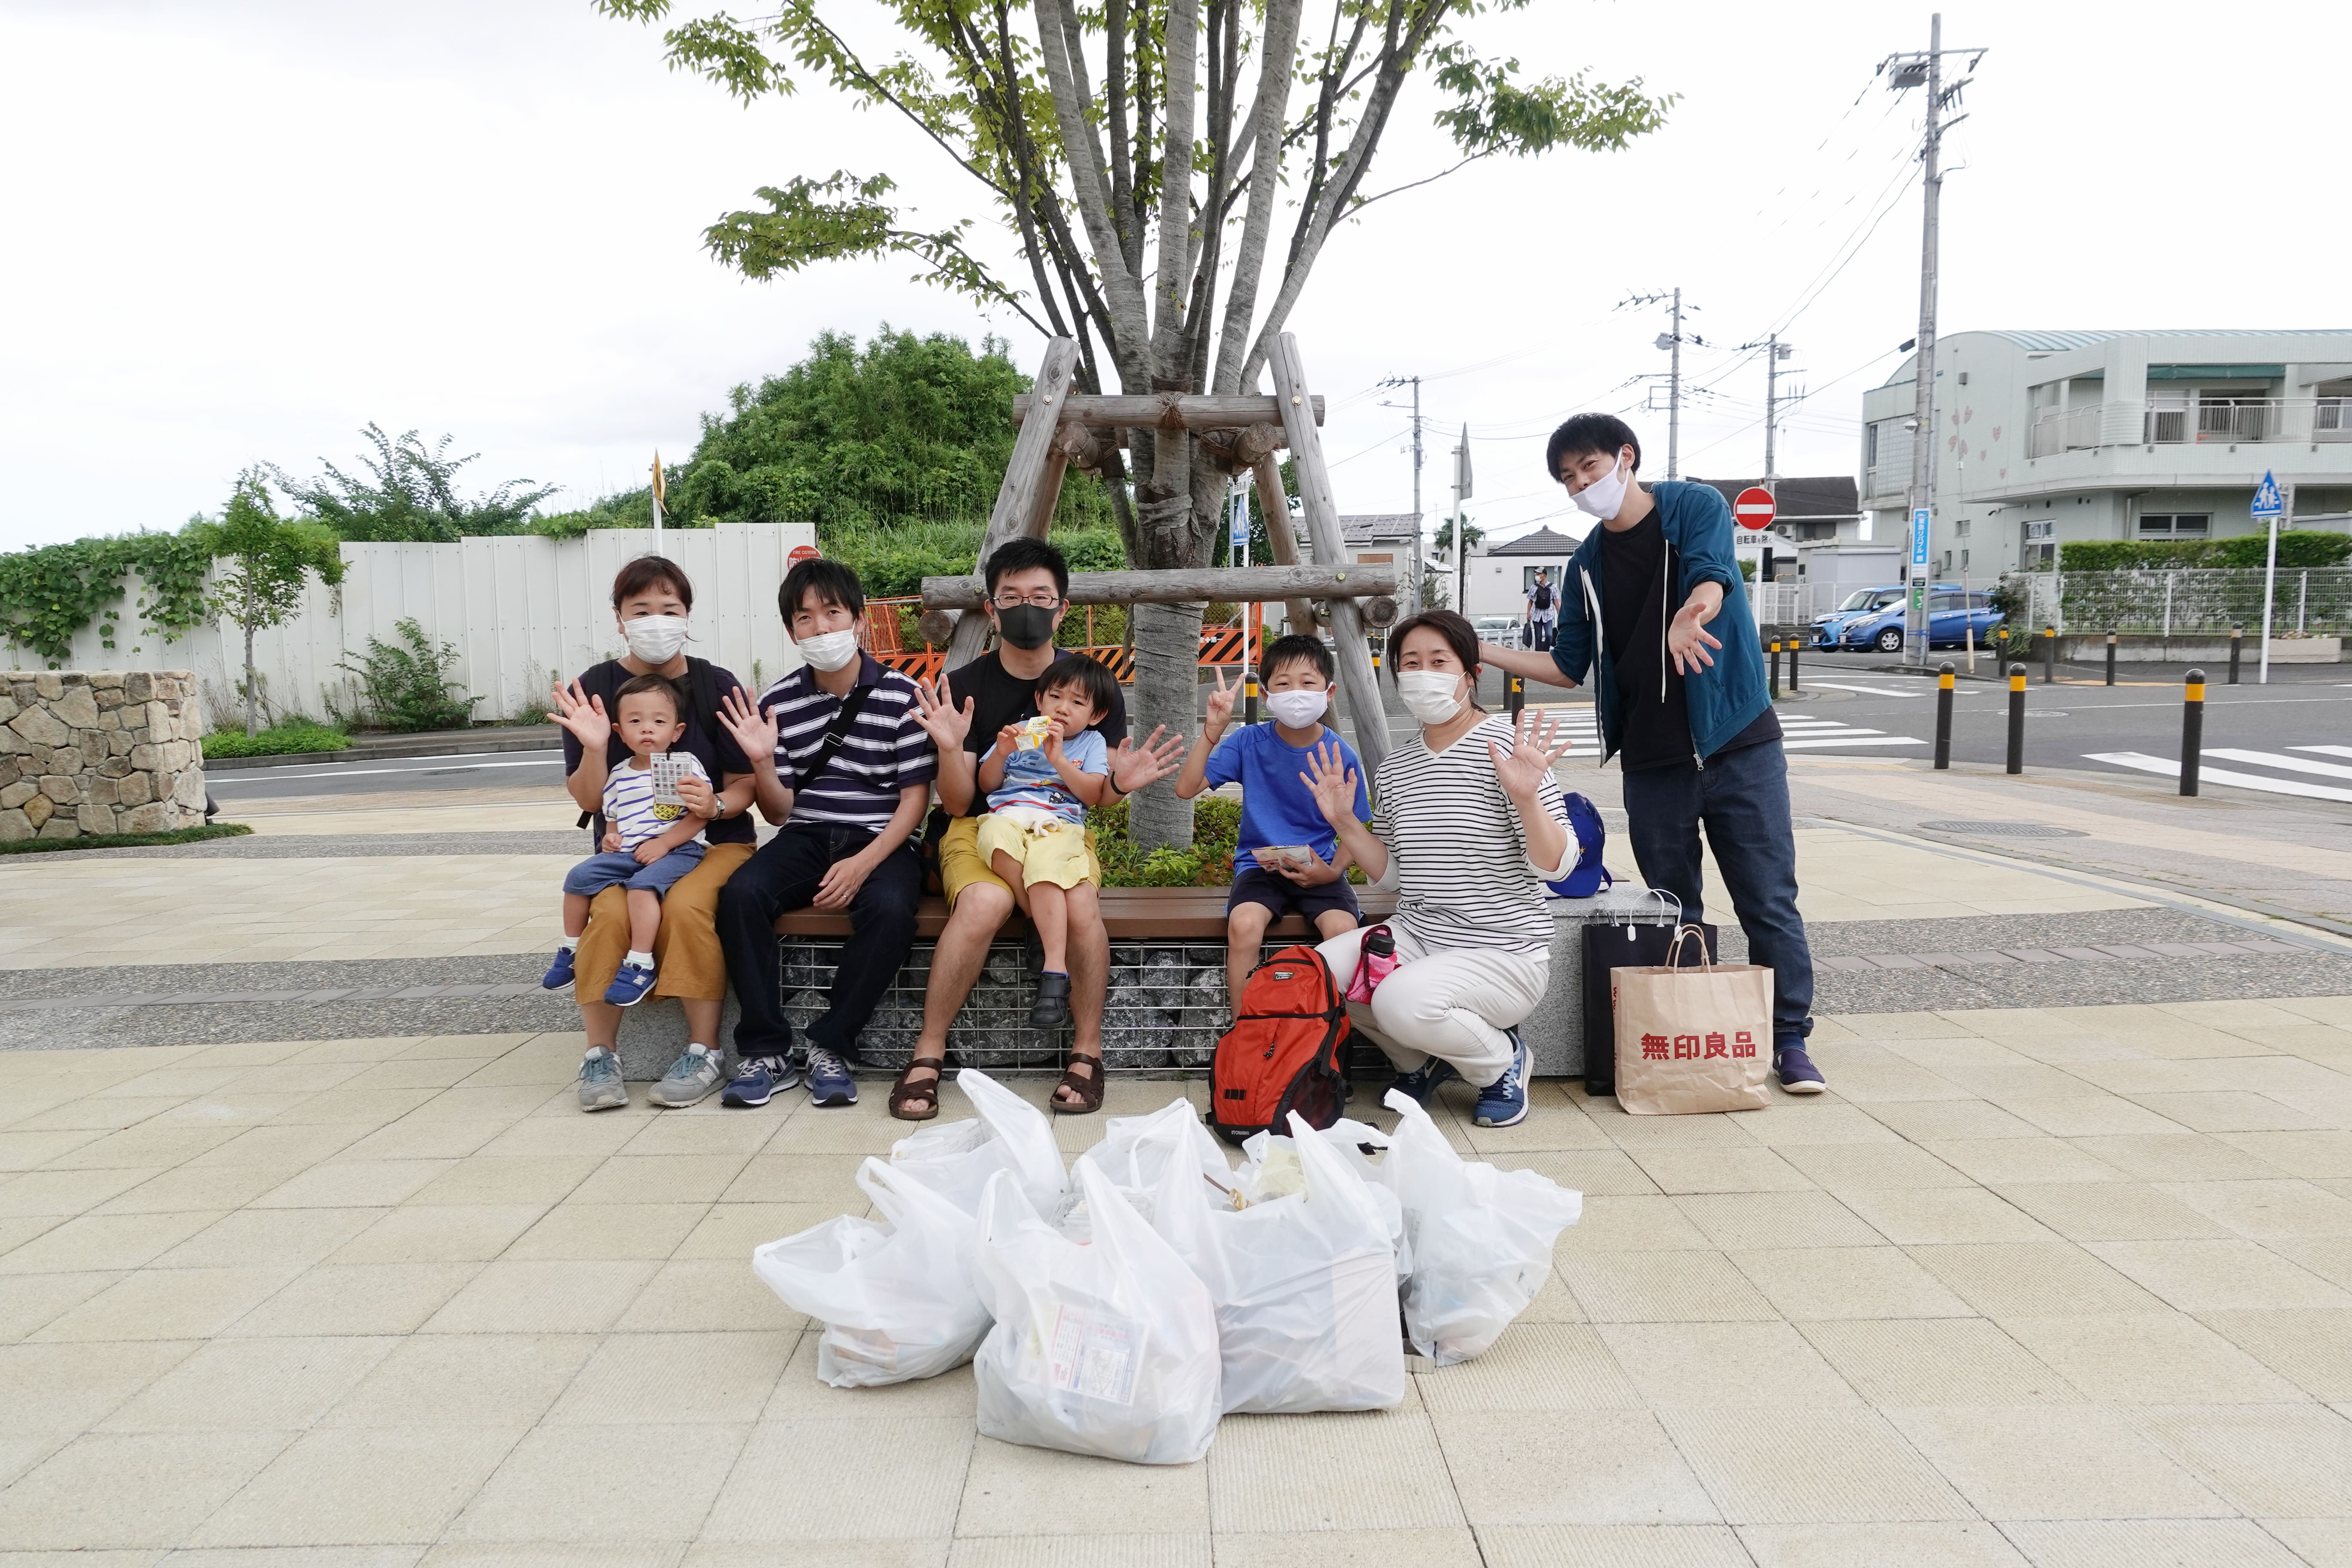 お散歩ビンゴ With Clean Up を開催しました 十日市場をキレイに 道のりを楽しく イベントレポート 横浜グリーンバトン倶楽部